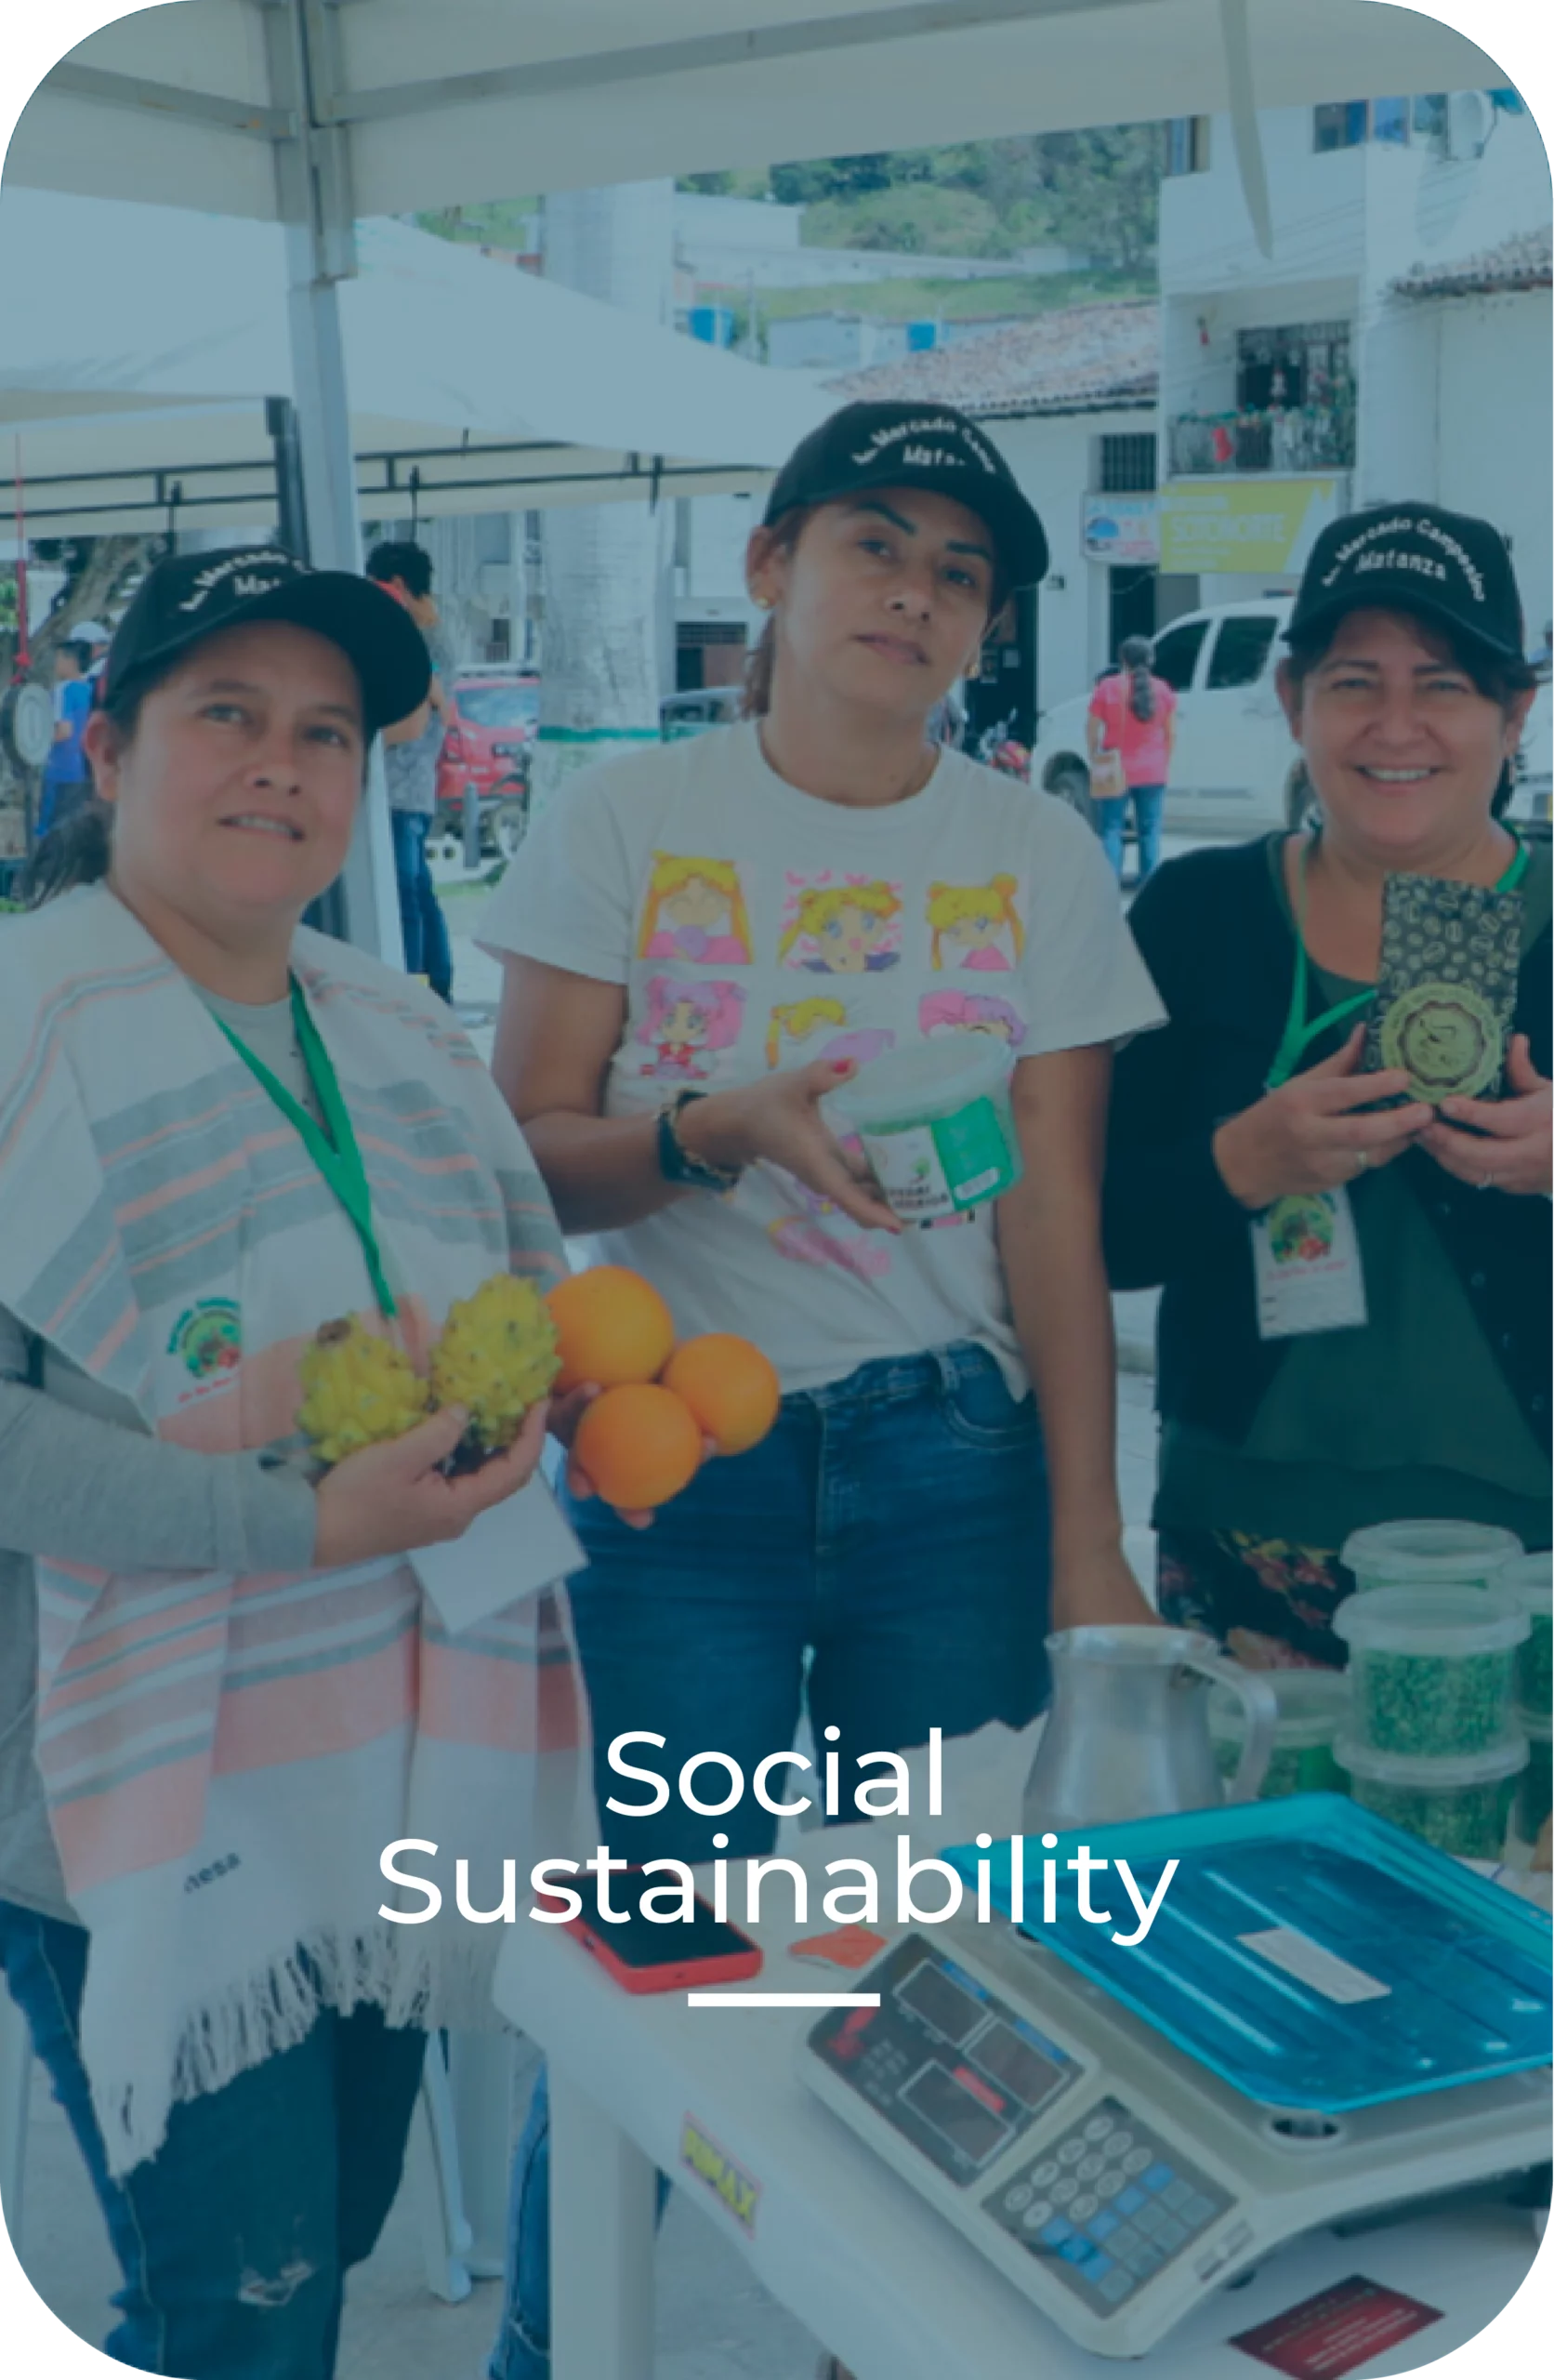 sostenibilidad social